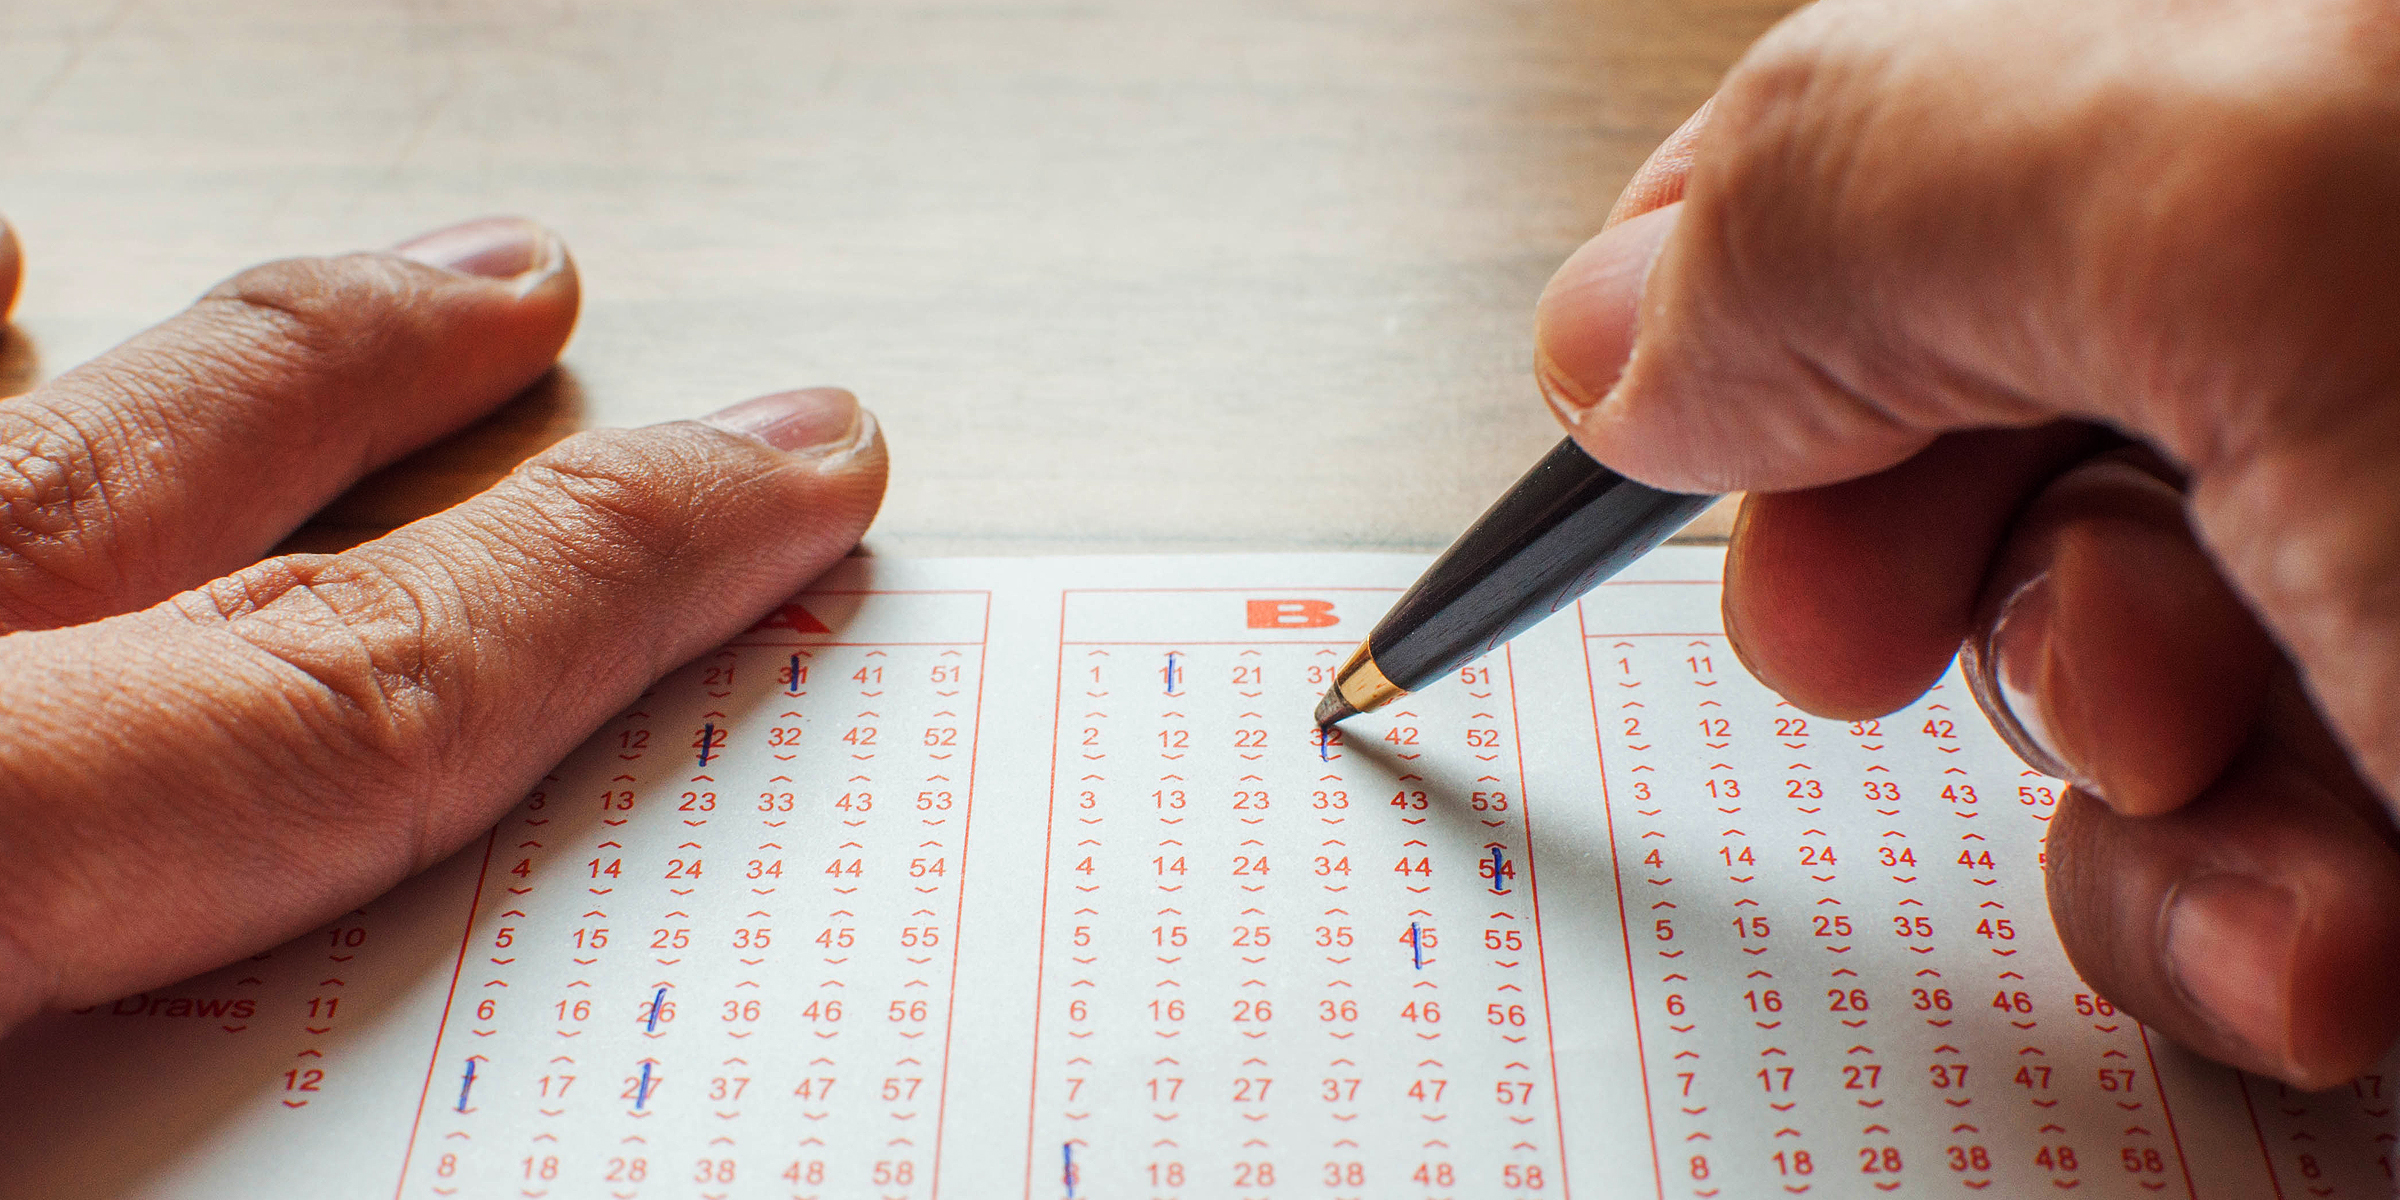 Persona seleccionando números en un billete de lotería | Fuente: Getty Images